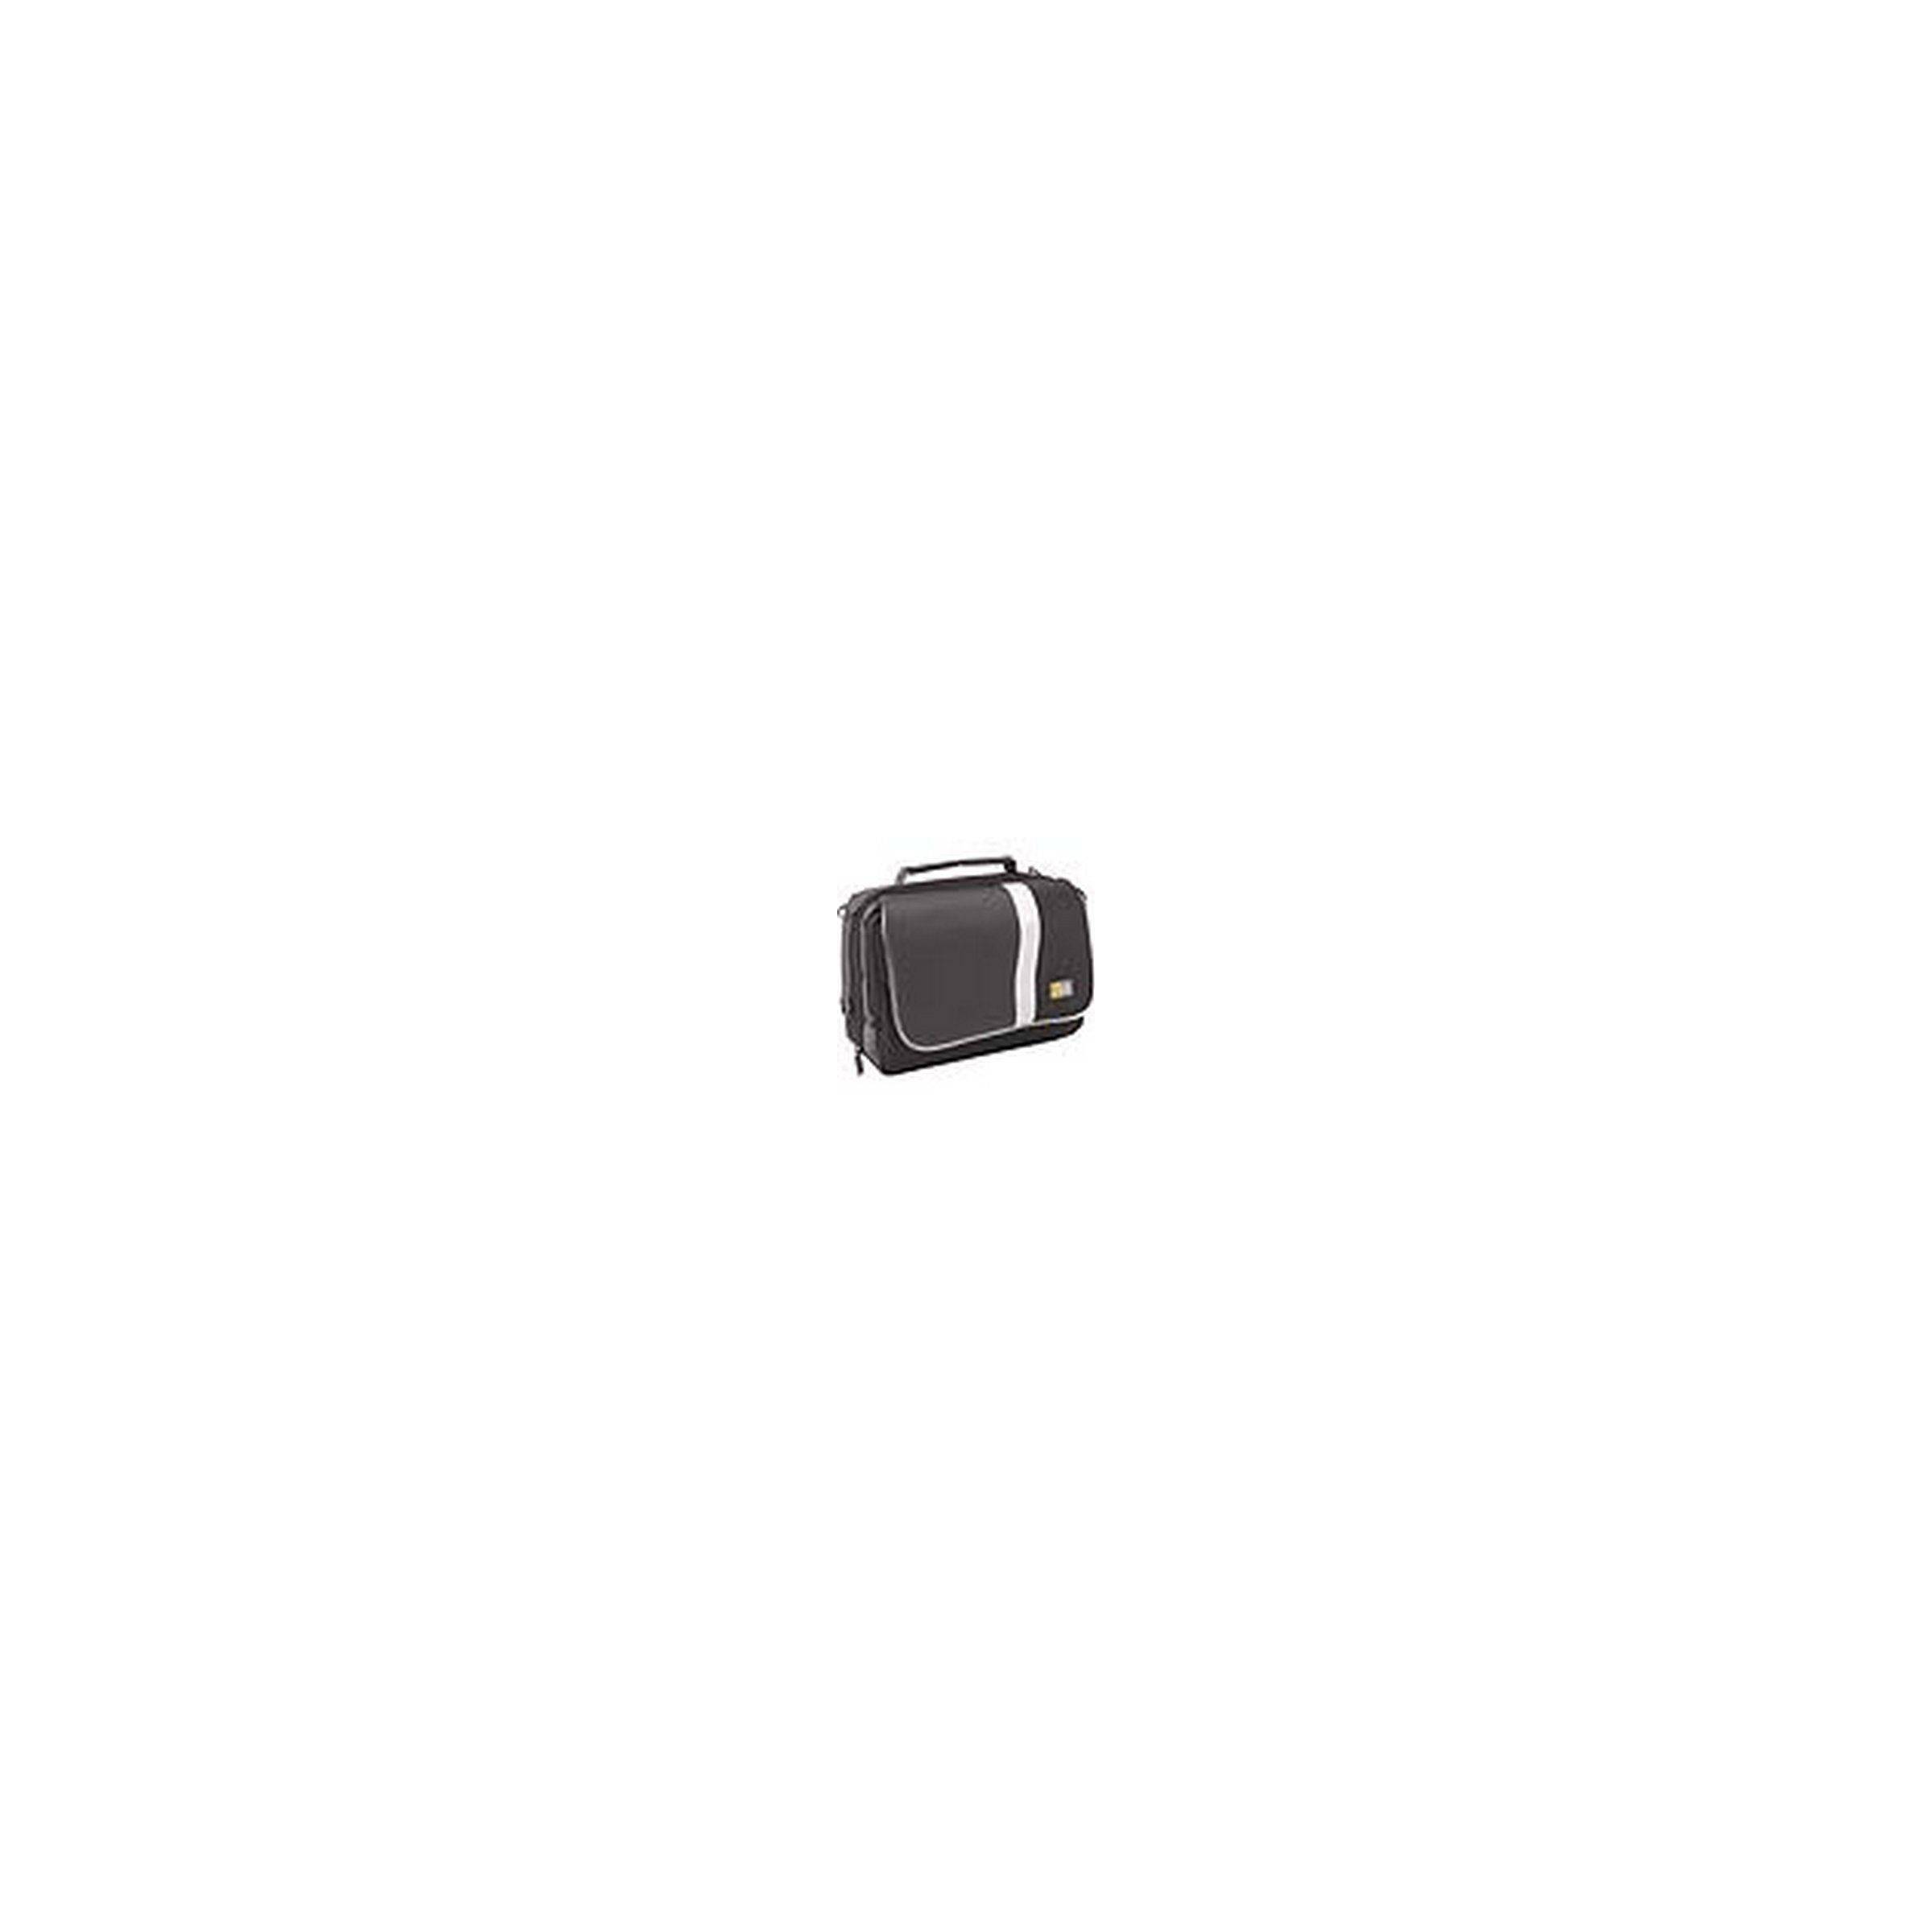 Bilde av Case Logic Portable Dvd Player Case In Cd Style -